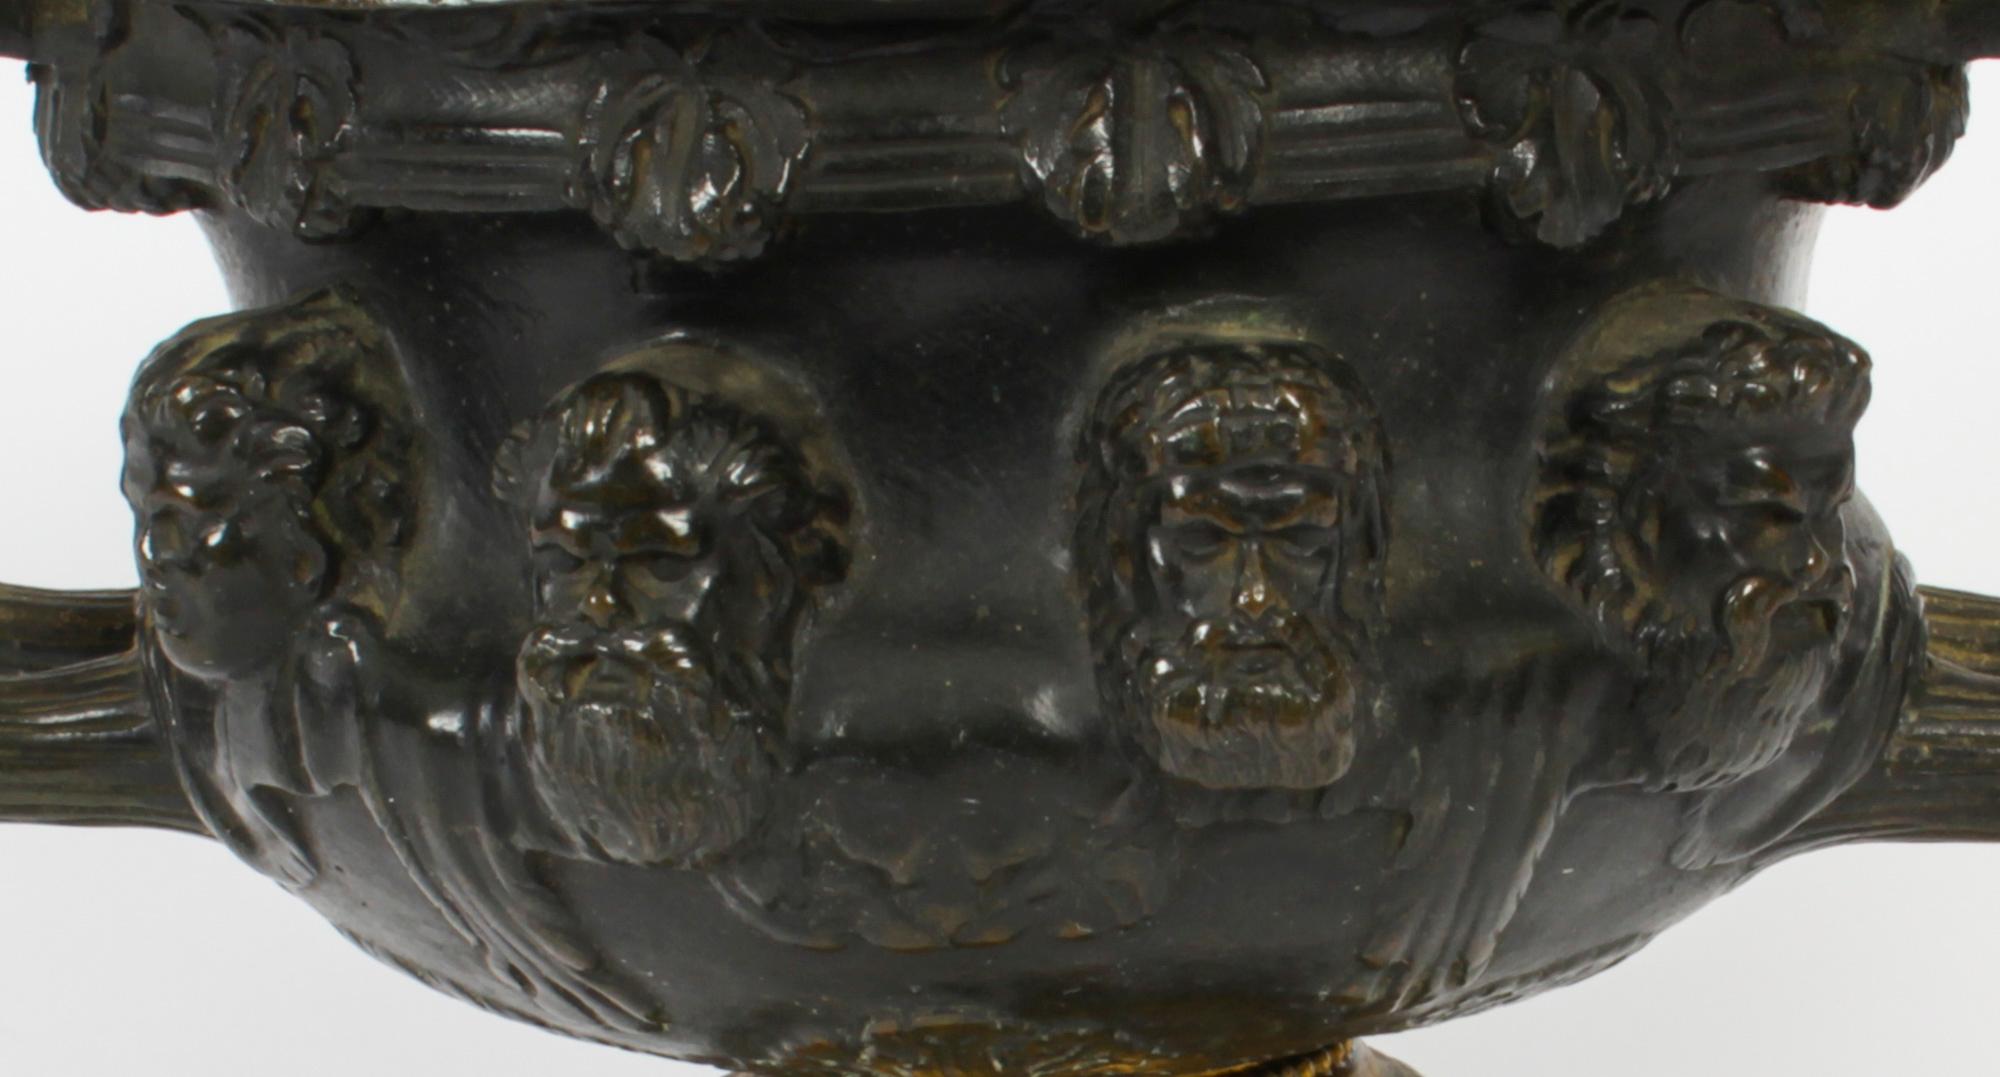 Dies ist eine schöne antike Französisch Grand Tour dunkel patiniert Bronze und Ormolu Urne mit Ormolu Liner, C1850 in Datum.

Diese wunderbare Bronze ist hervorragend gegossen und hat eine elegante braune Patina. Die Urne hat einen Rand aus Eiern